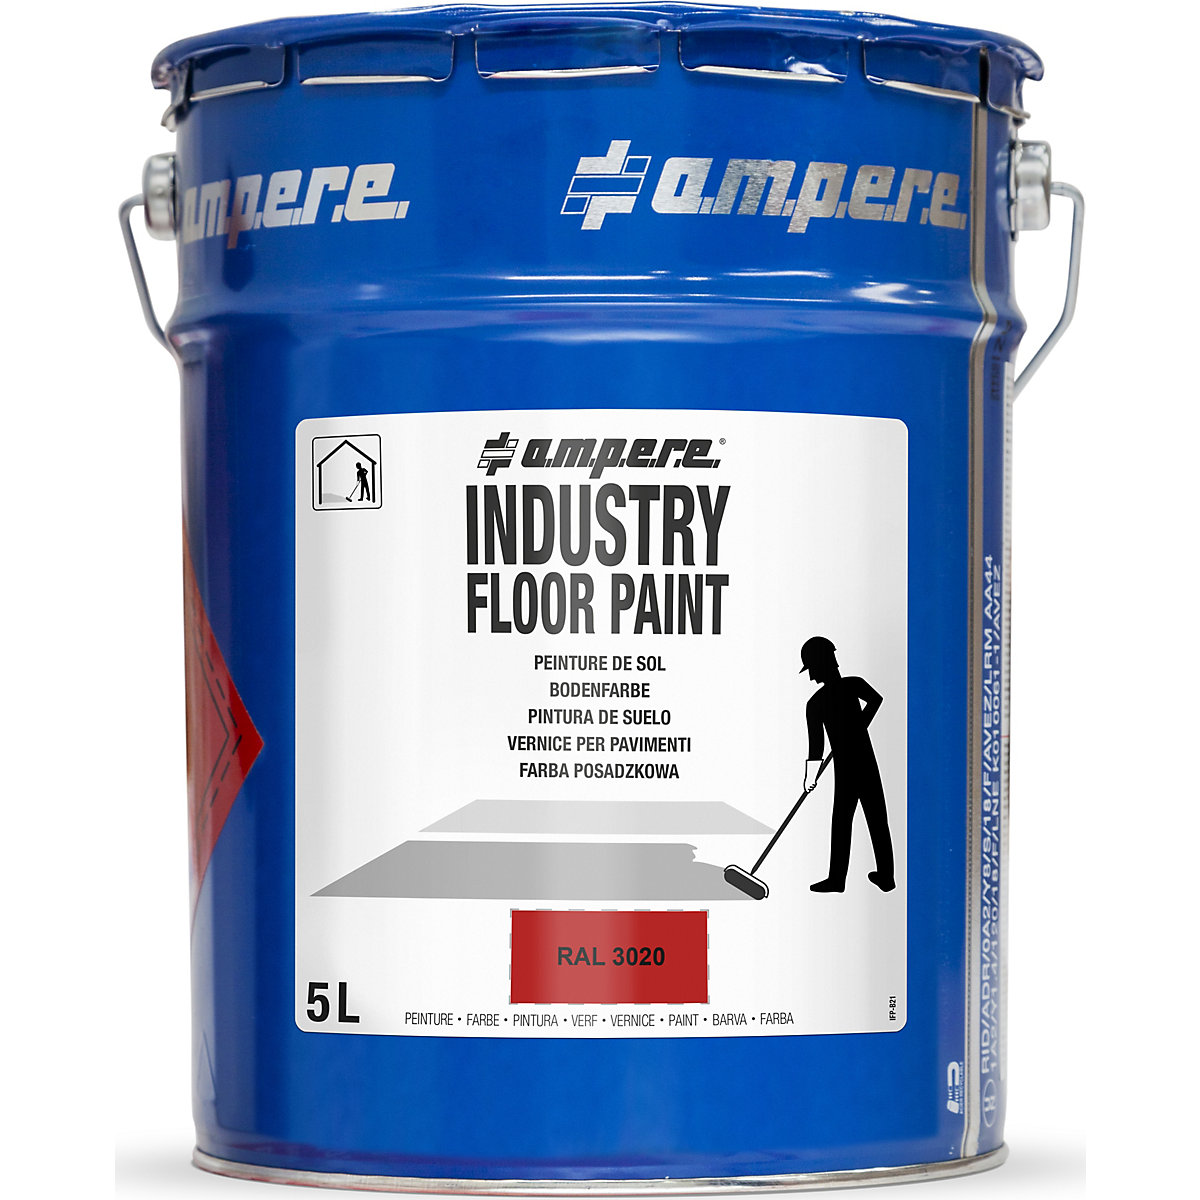 Barva pro podlahové značení Industry Floor Paint® – Ampere, objem 5 l, červená-9